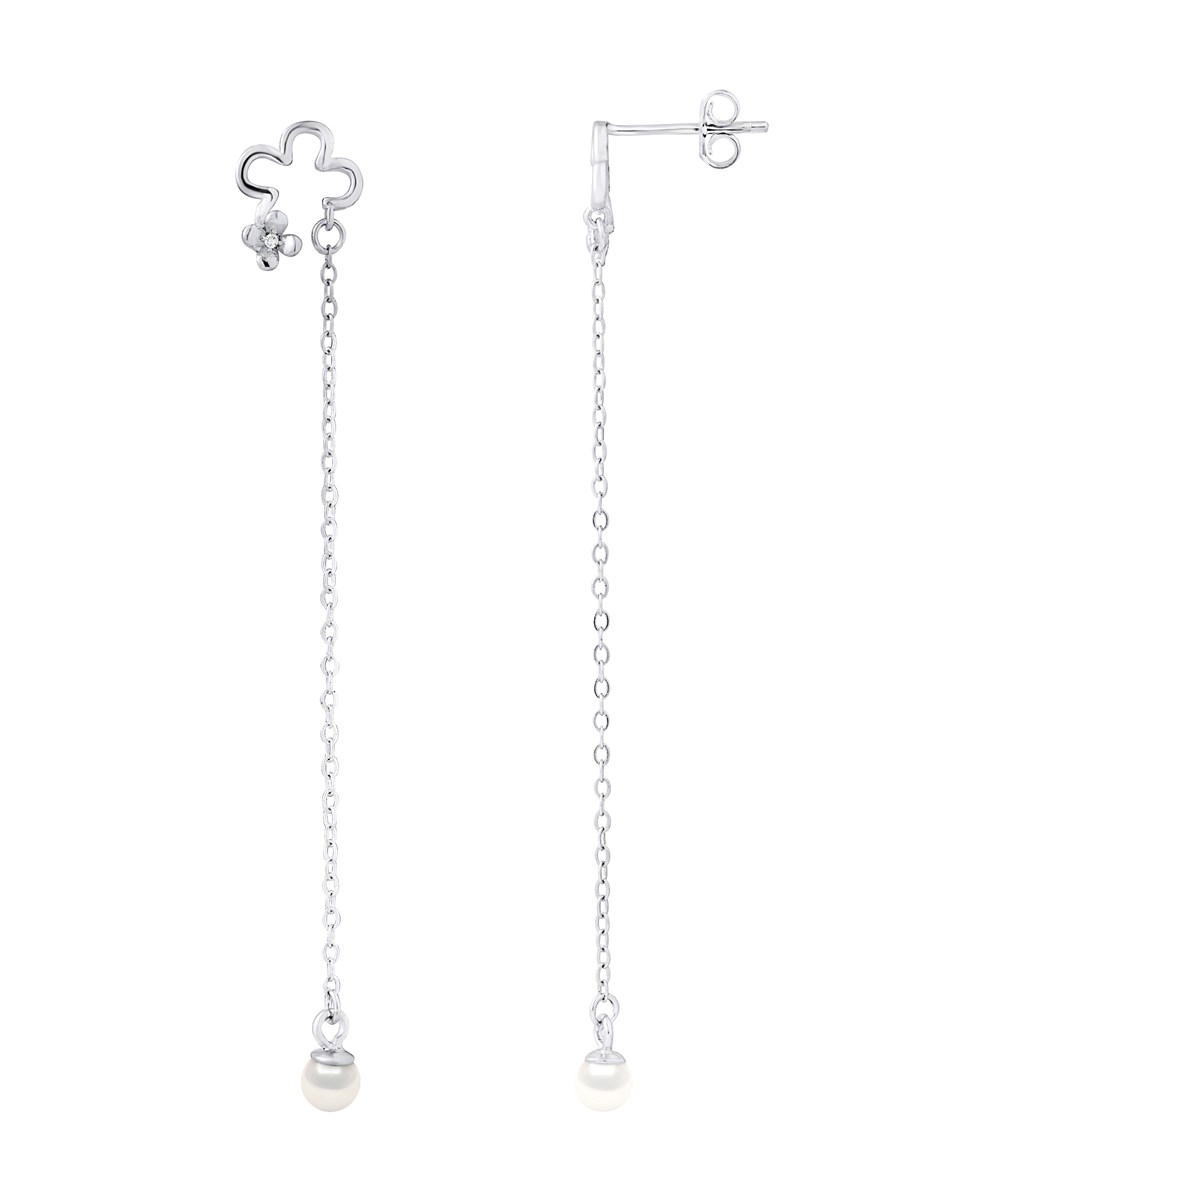 Boucles d'Oreilles TREFLE - Perles blanches - Oxyde de zirconium - Argent 925